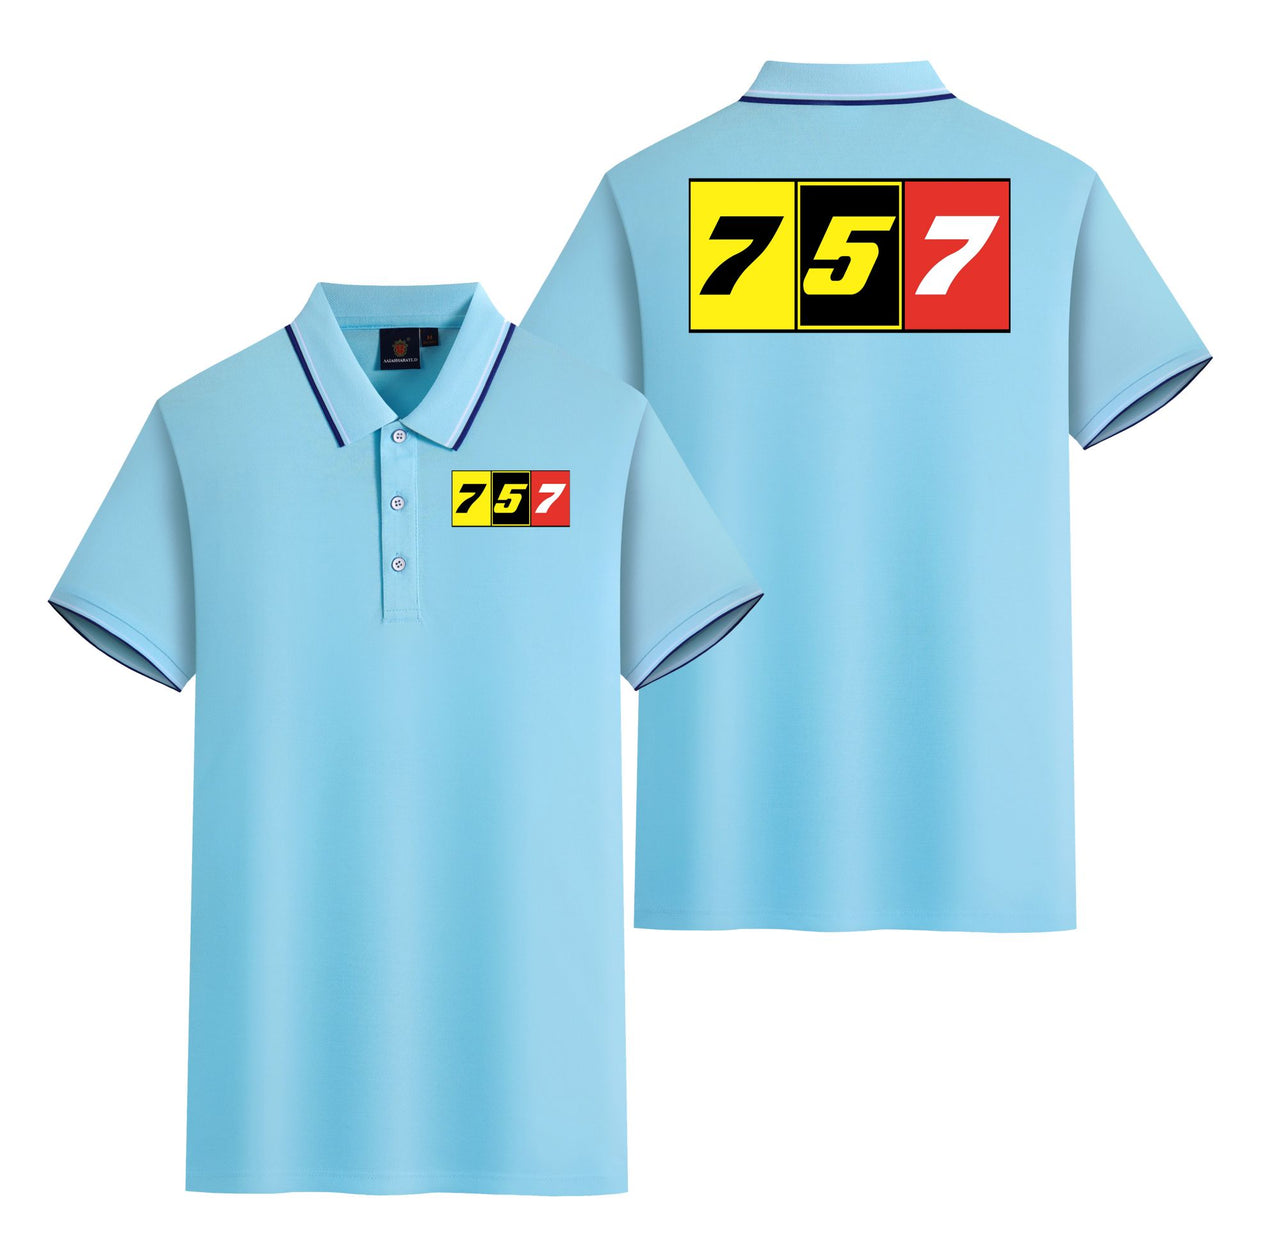 Flat Colourful 757 Designed Stylish Polo T-Shirts (Double-Side)